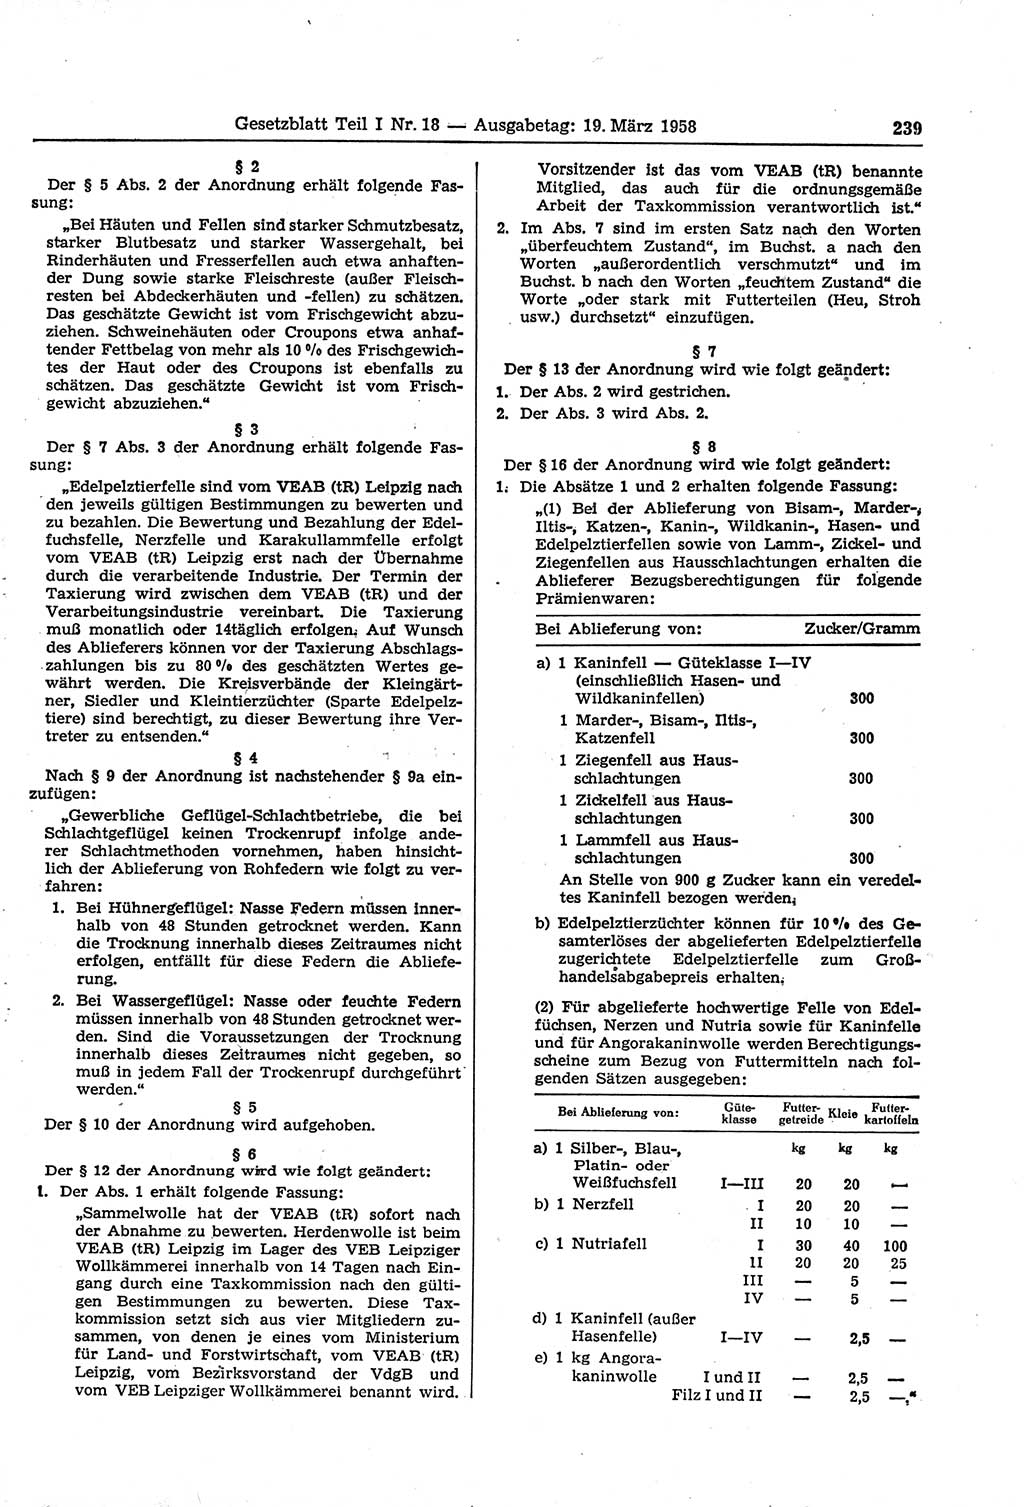 Gesetzblatt (GBl.) der Deutschen Demokratischen Republik (DDR) Teil Ⅰ 1958, Seite 239 (GBl. DDR Ⅰ 1958, S. 239)